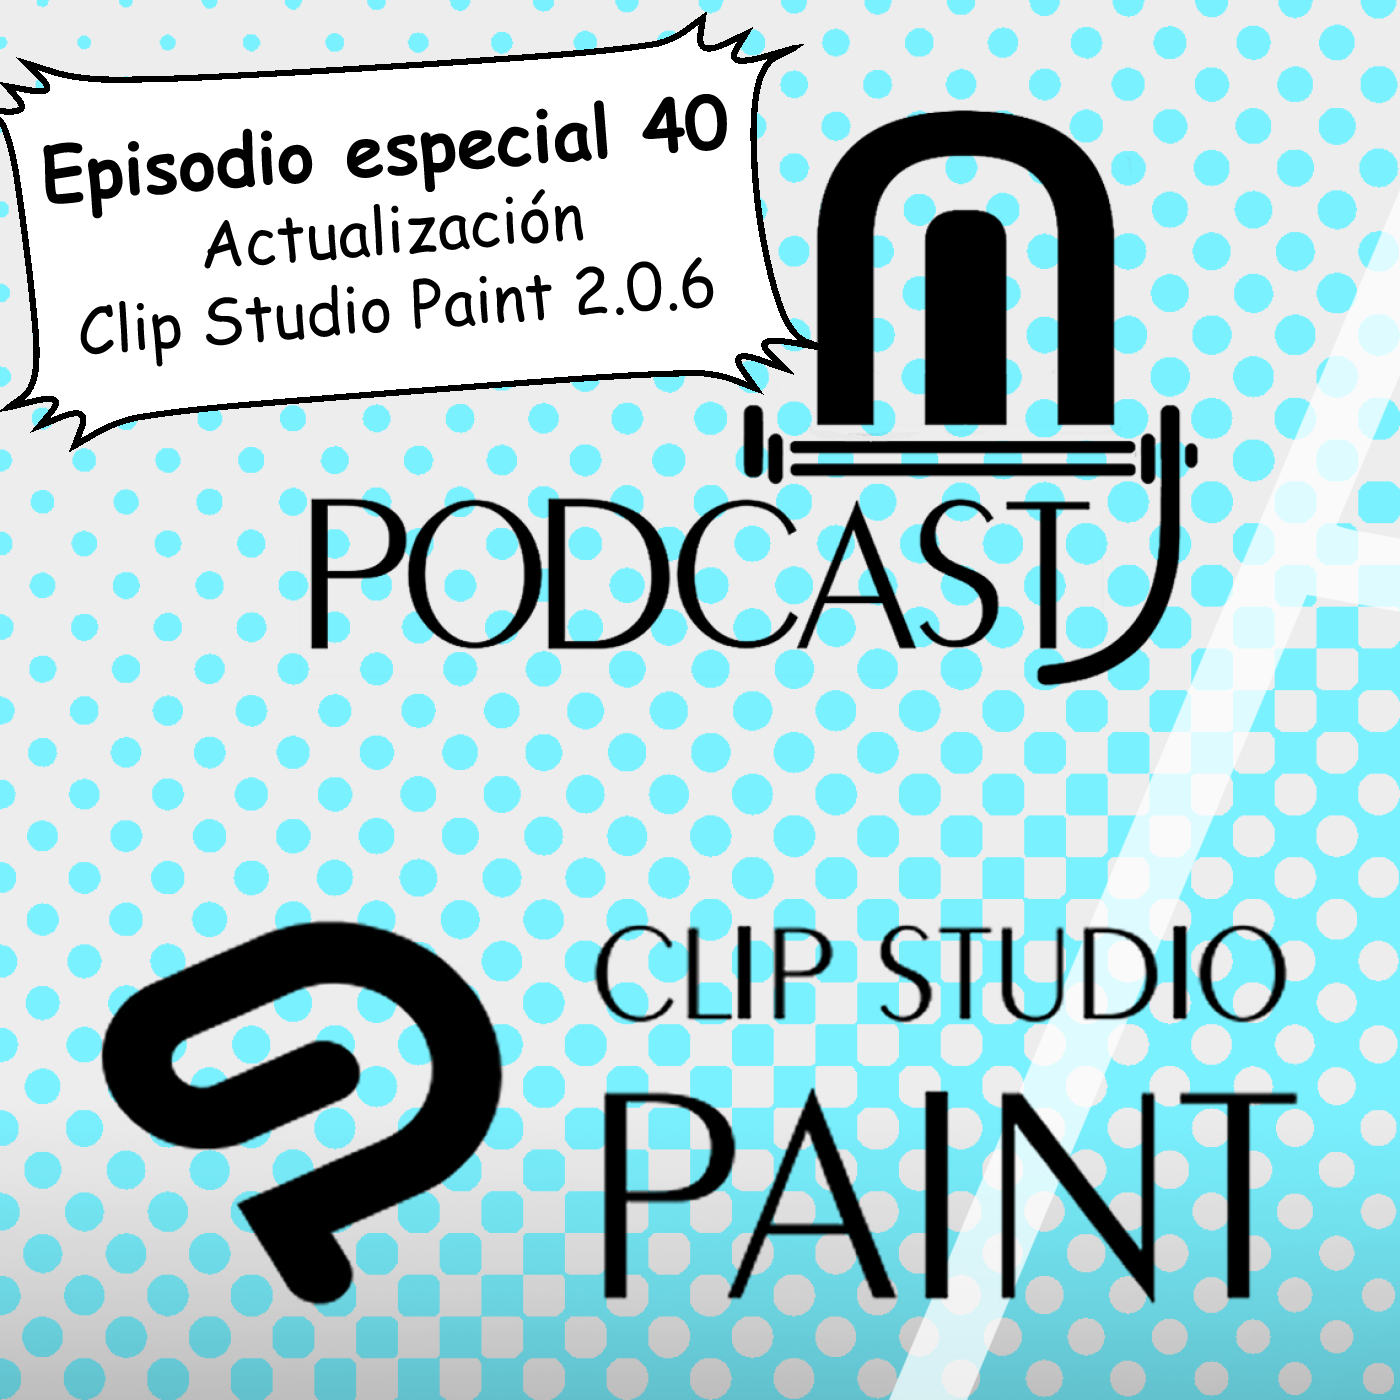 CSP especial 40. Actualización 2.0.6 de Clip Studio Paint